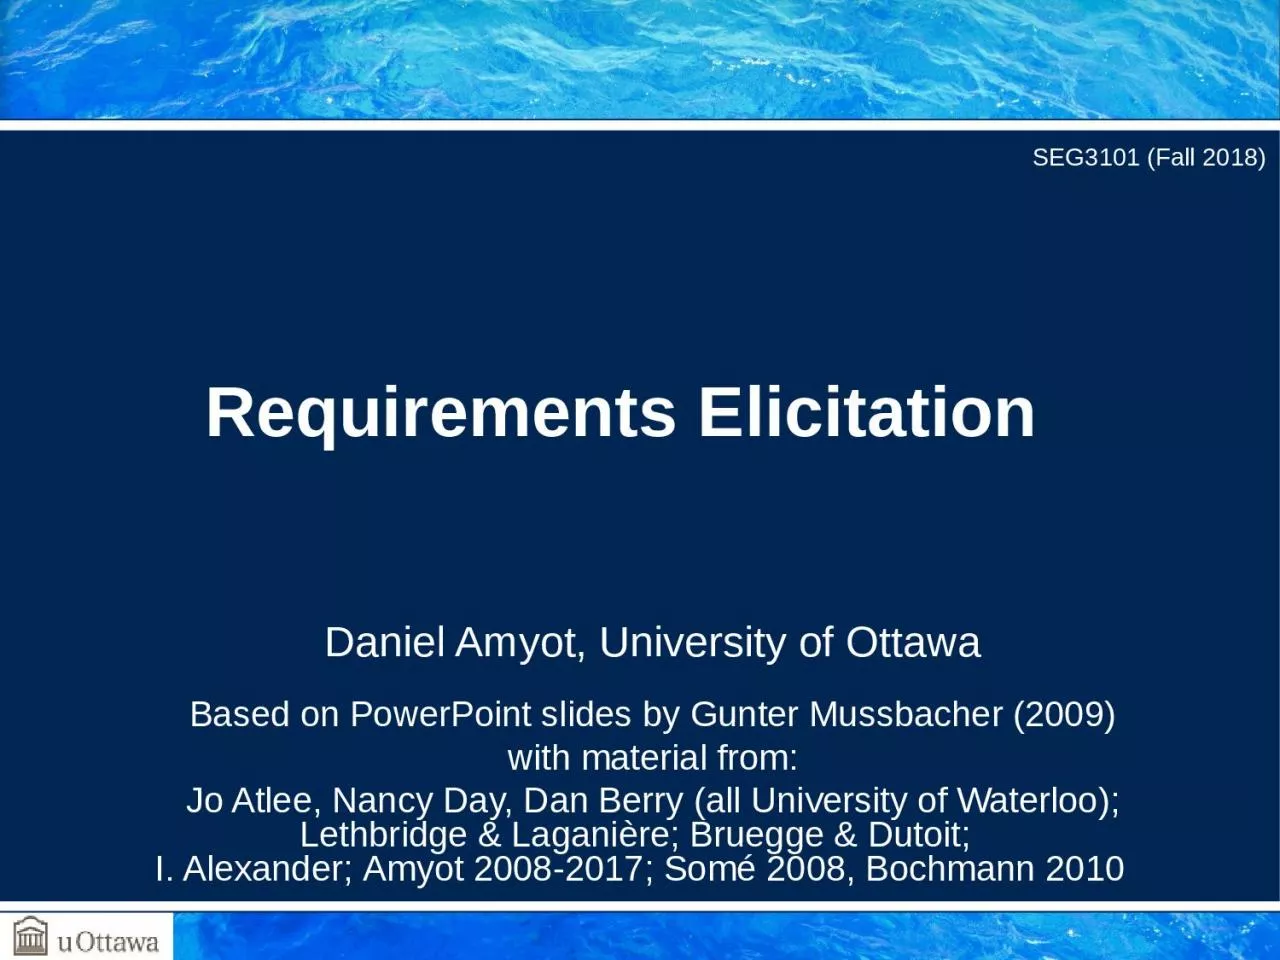 Daniel Amyot, University of Ottawa